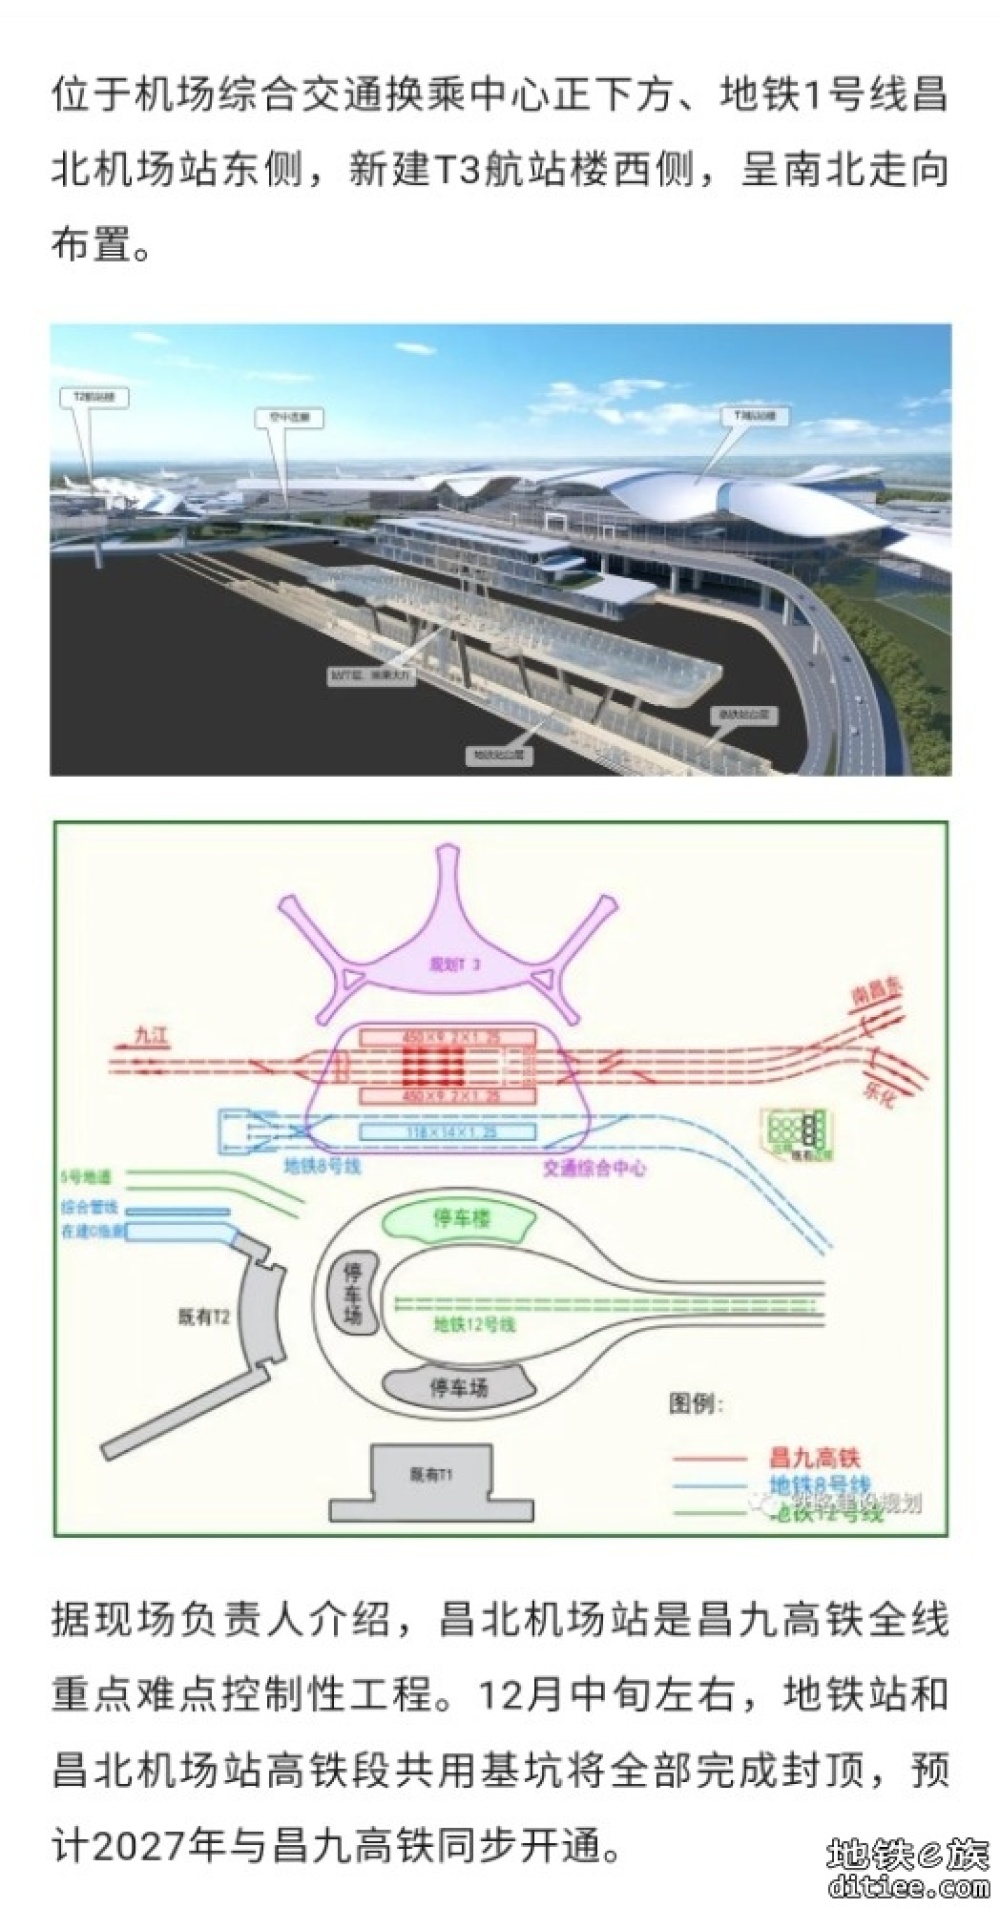 昌九高铁昌北机场站进入主体结构施工